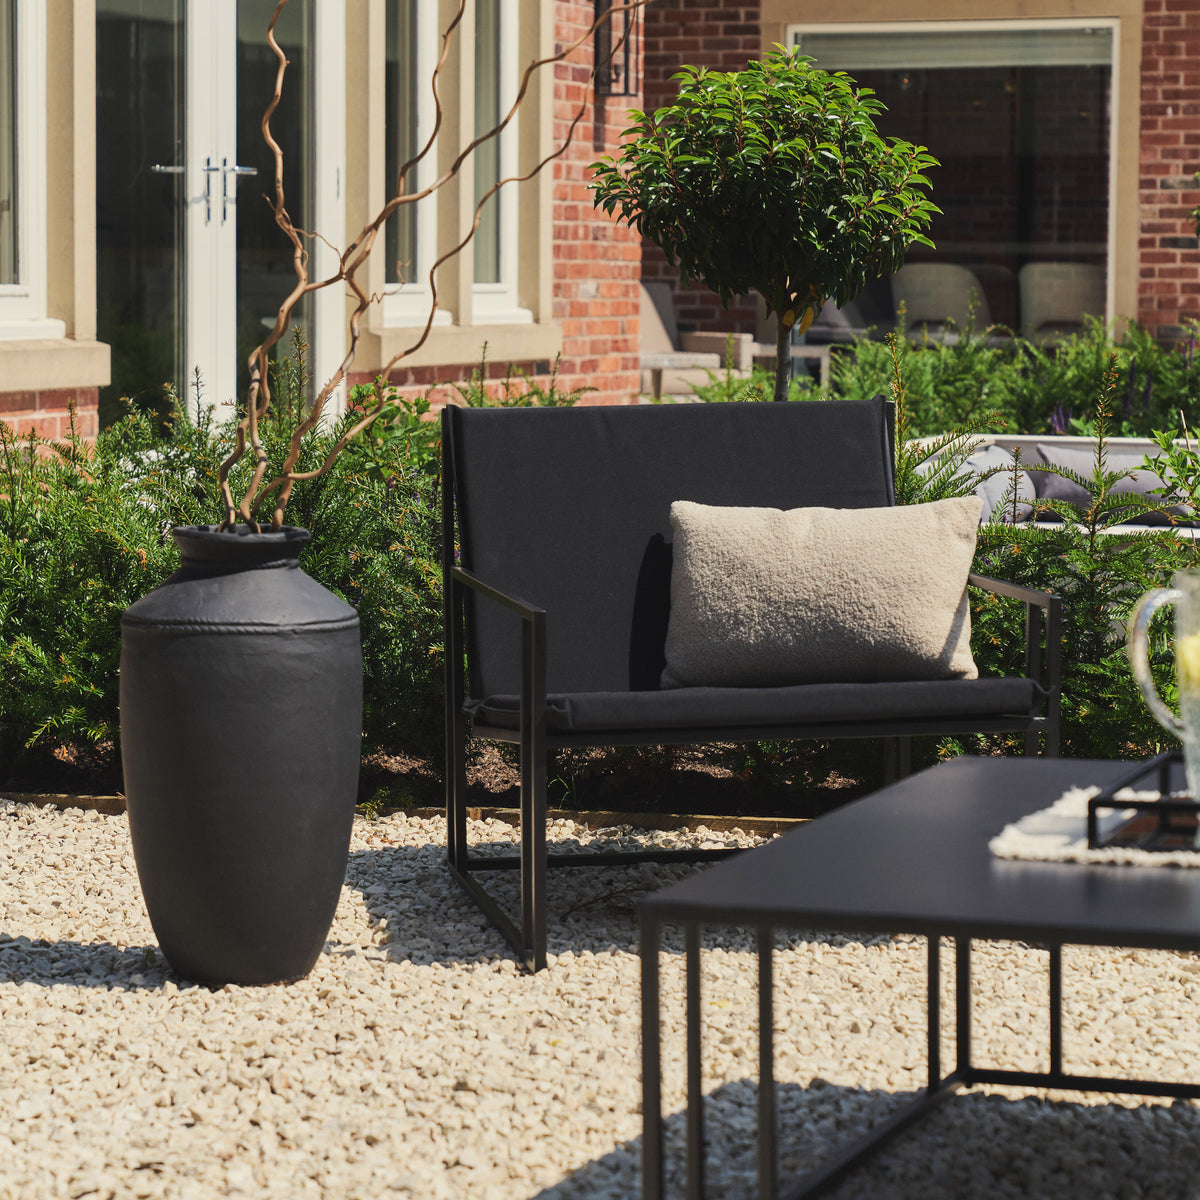 Rectangular Black Modern Garden chair beside toledo vase